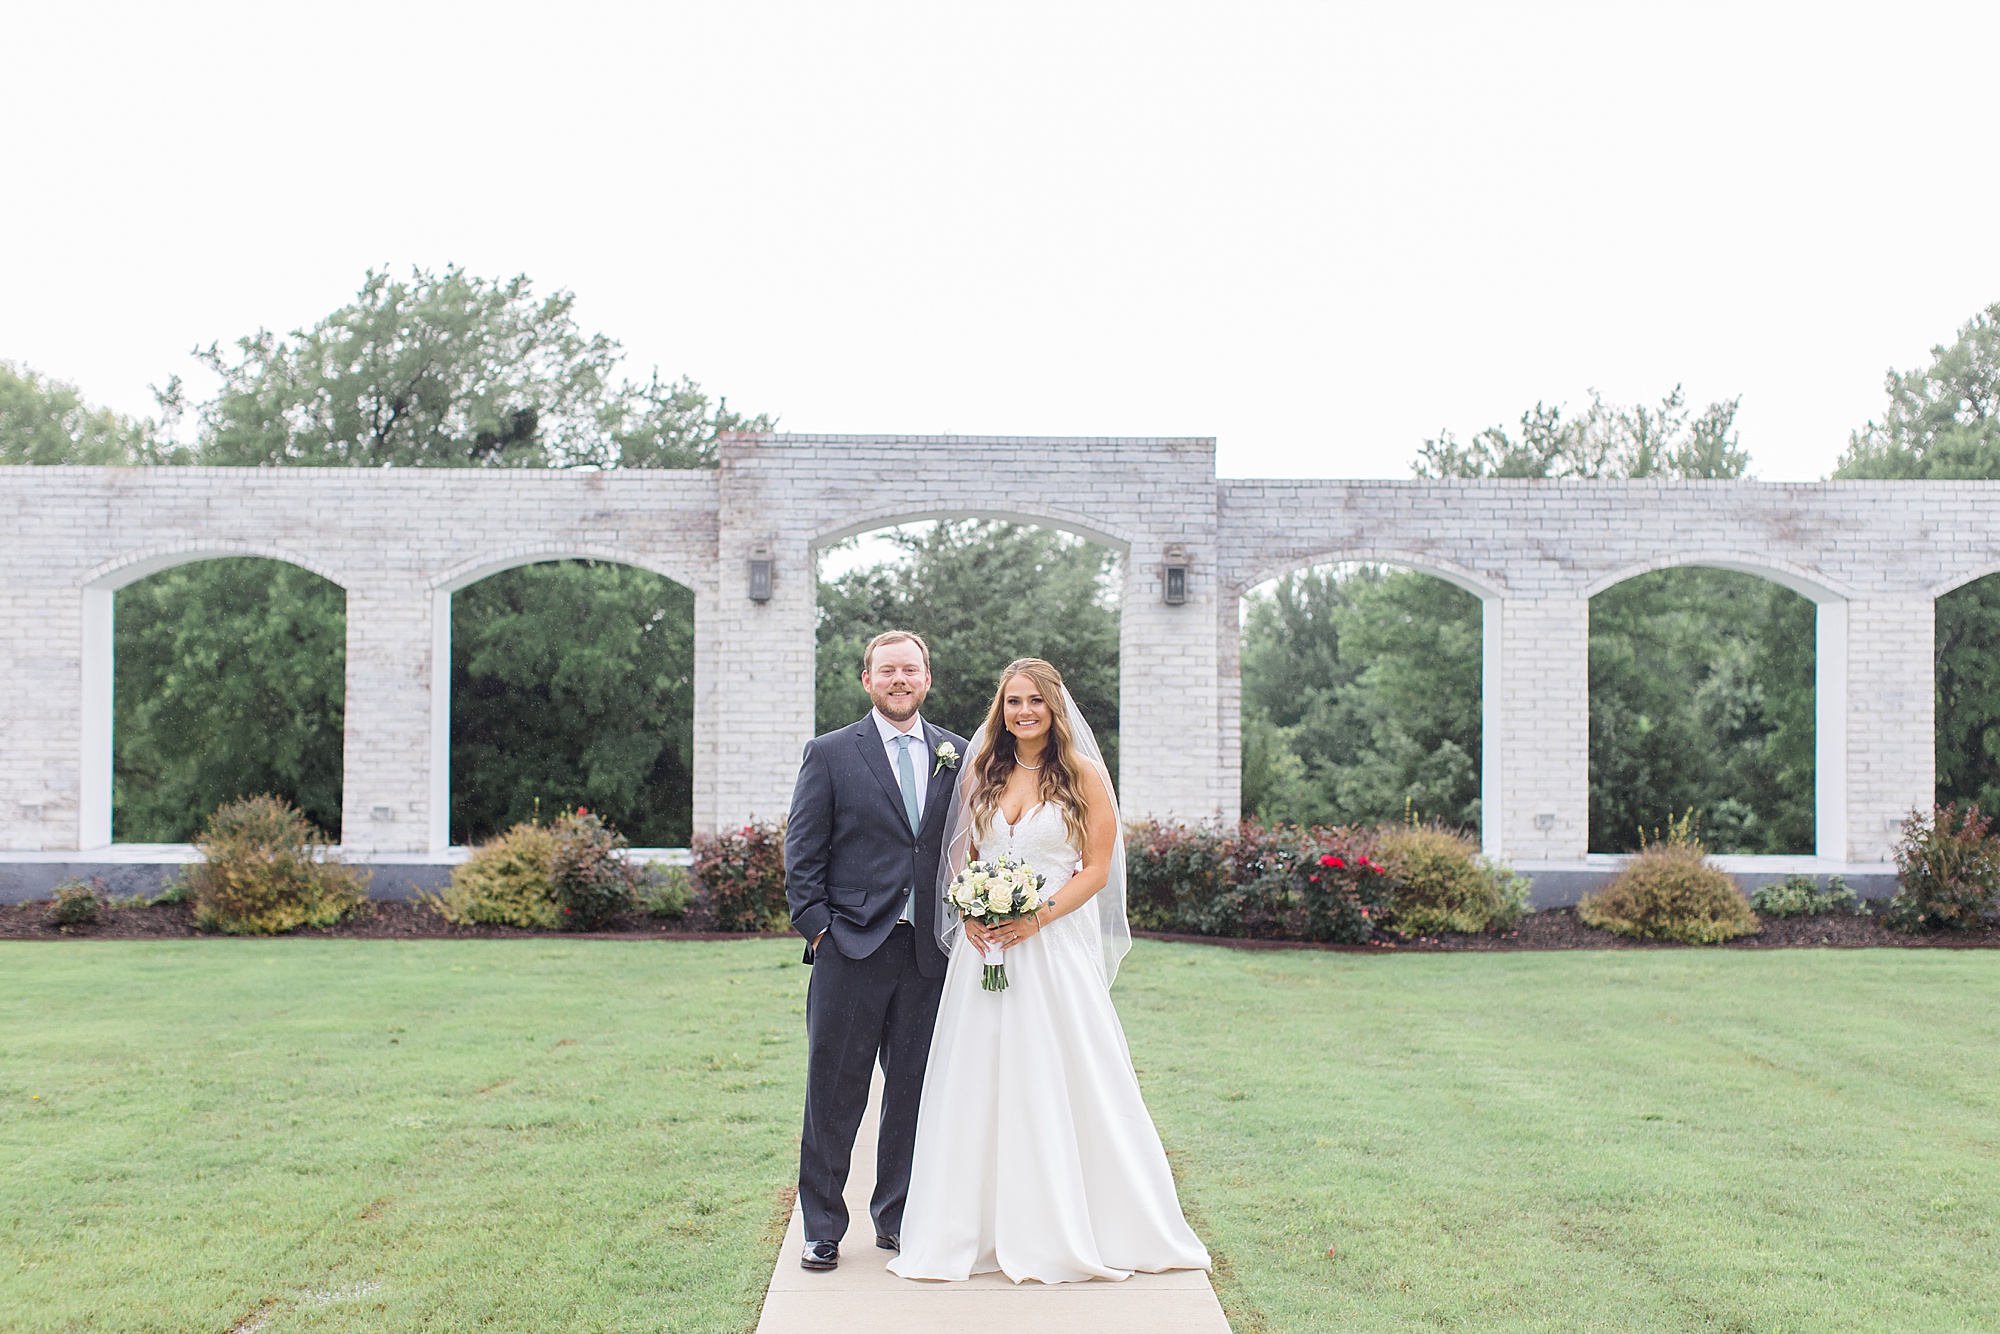 newlyweds pose by stone wall